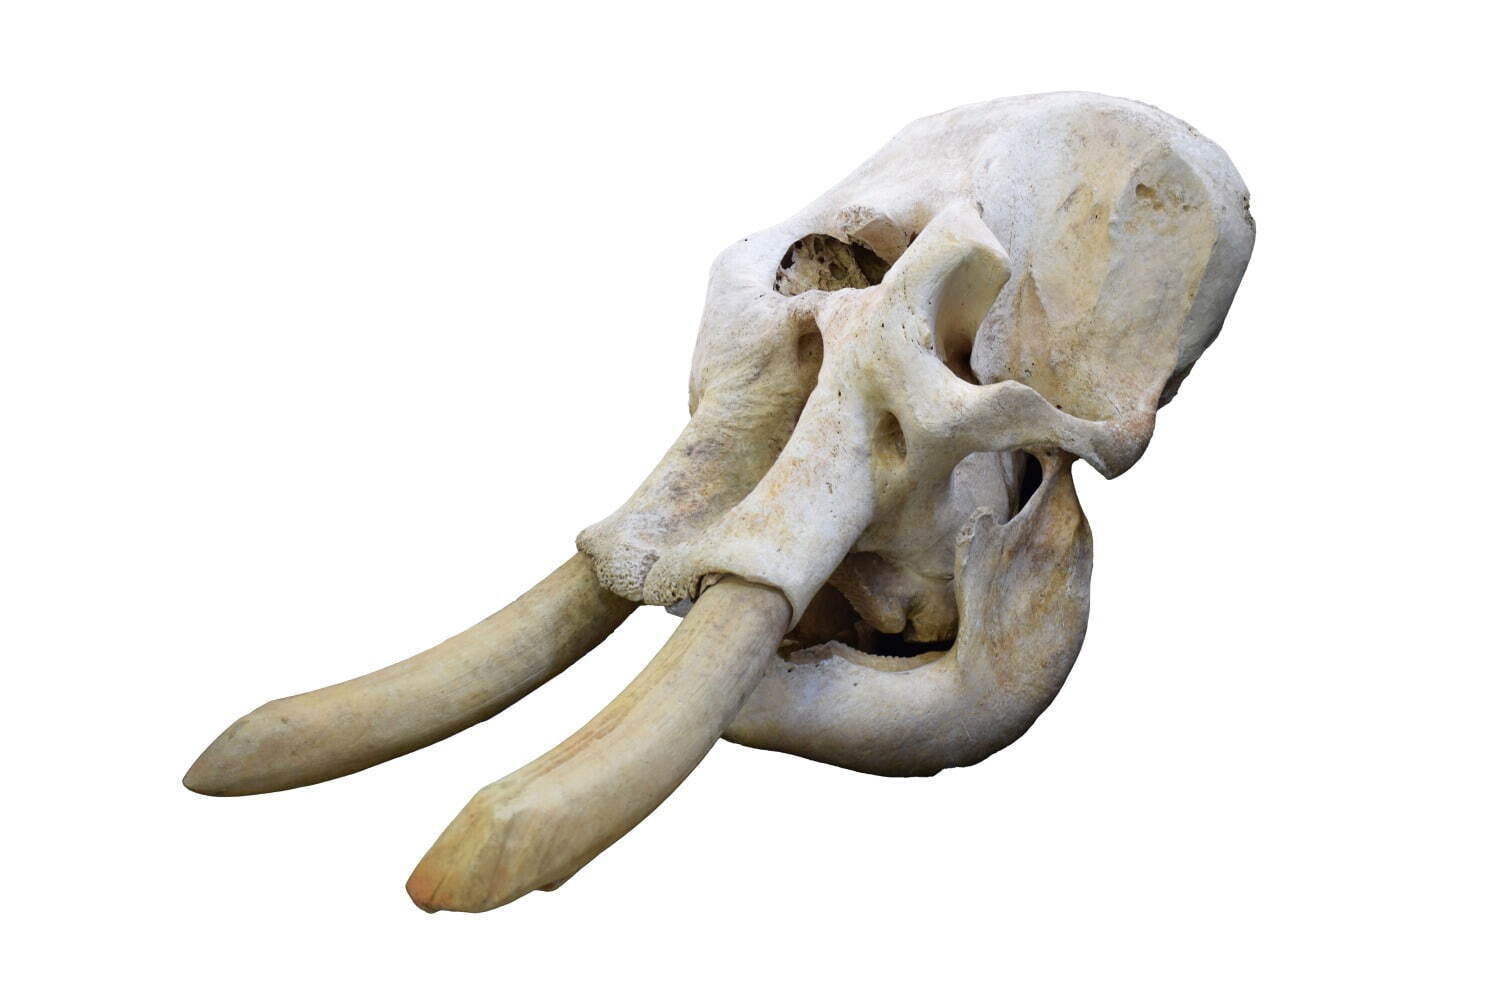 アジアゾウの頭骨標本
(国立科学博物館所蔵)